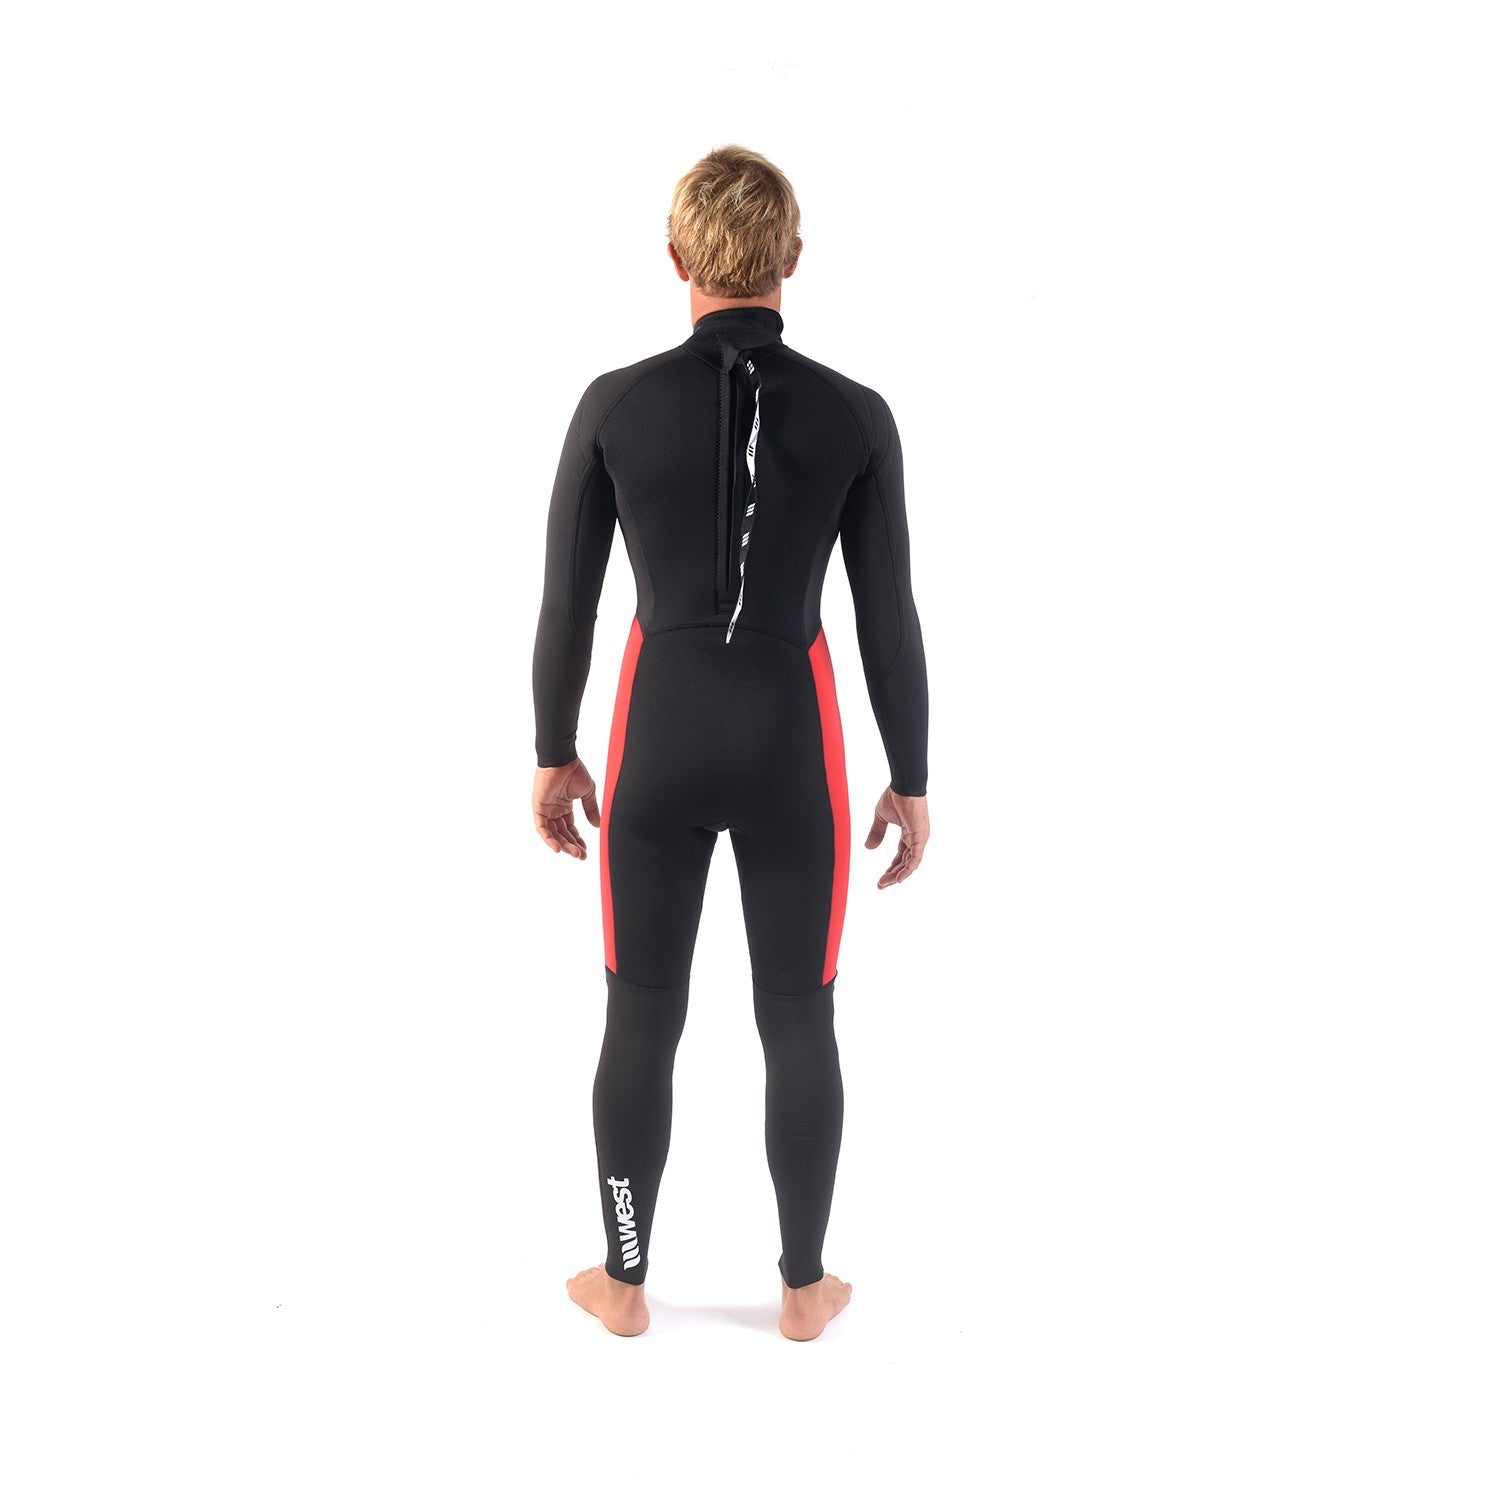 WEST - Surf wetsuit - Enforcer-S Back zip 3/2mm - Black / Red